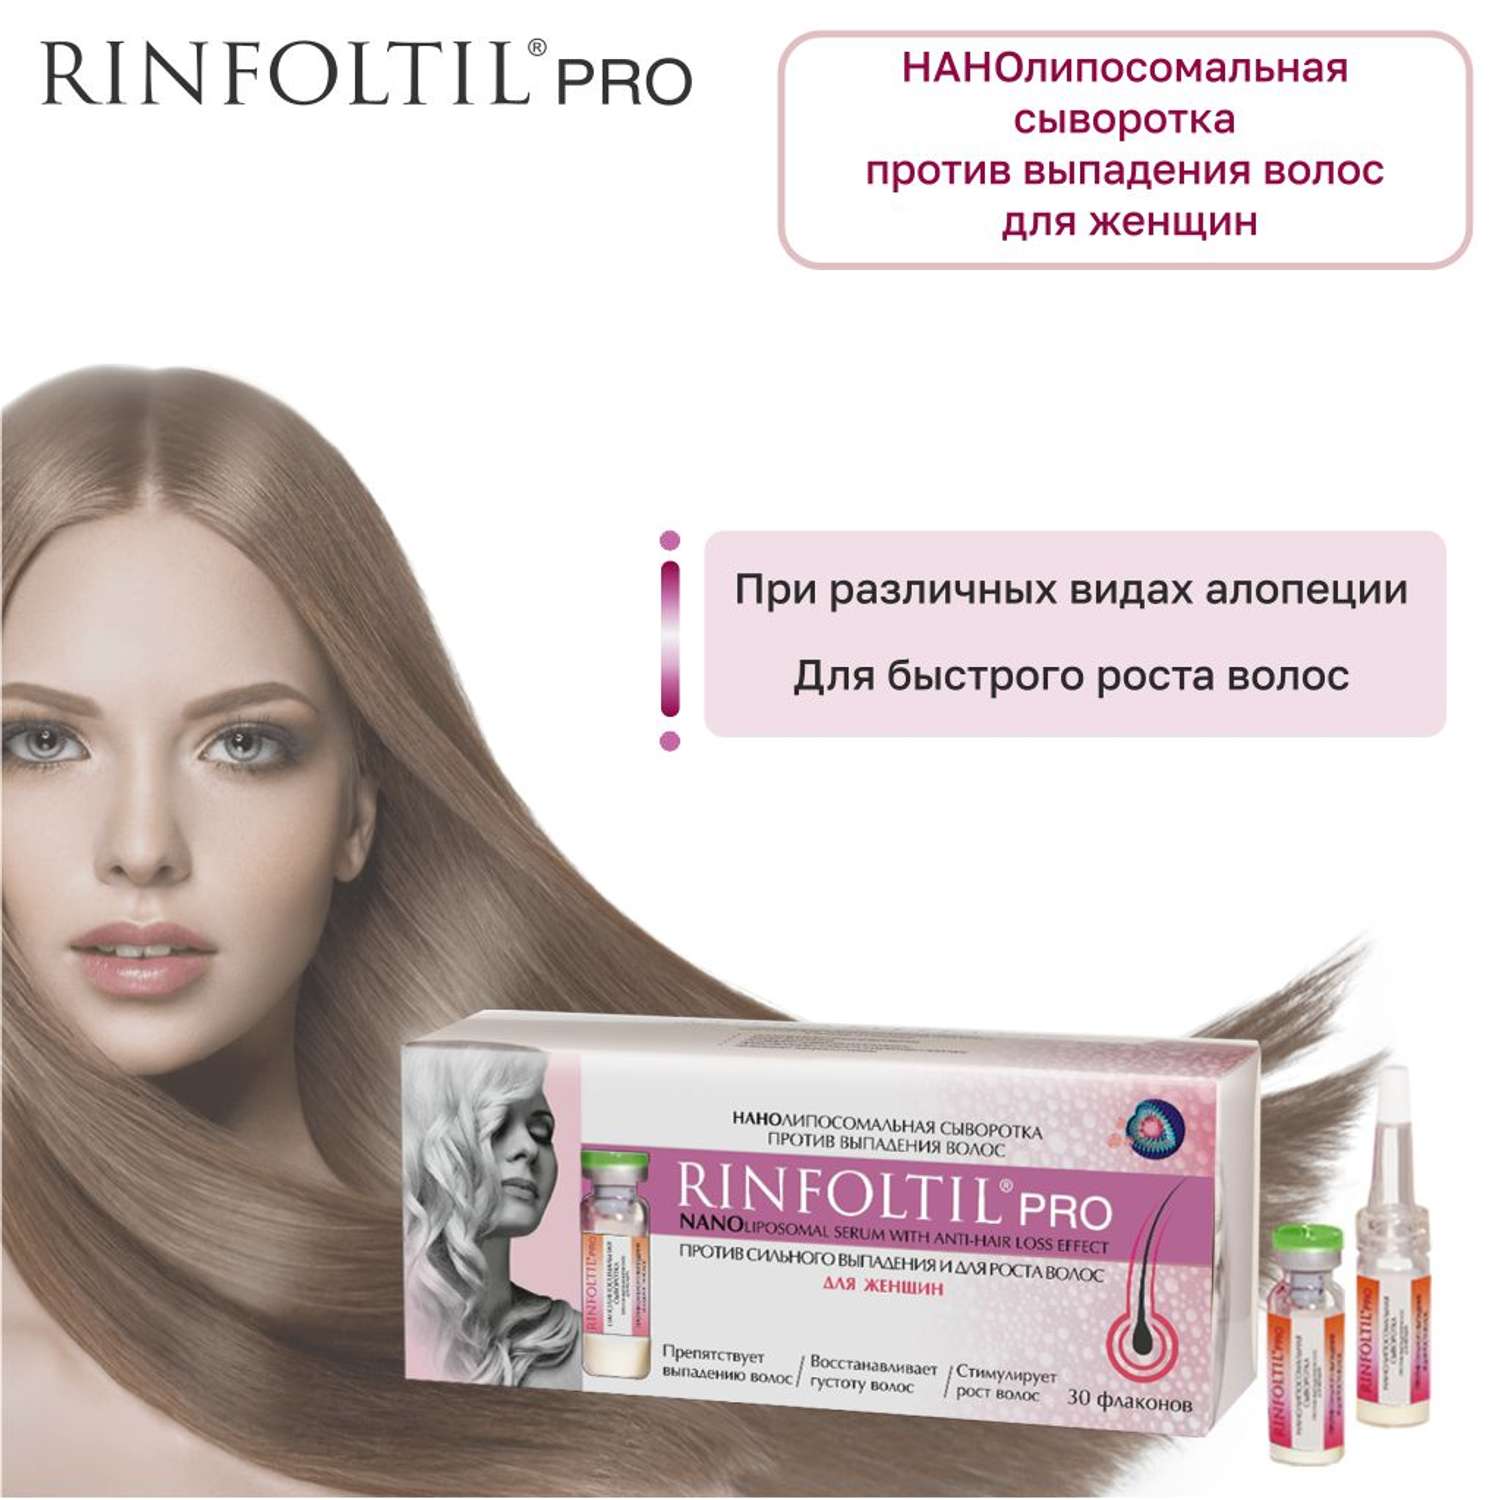 Сыворотка Rinfoltil PRO Нанолипосомальная против выпадения волос - фото 3